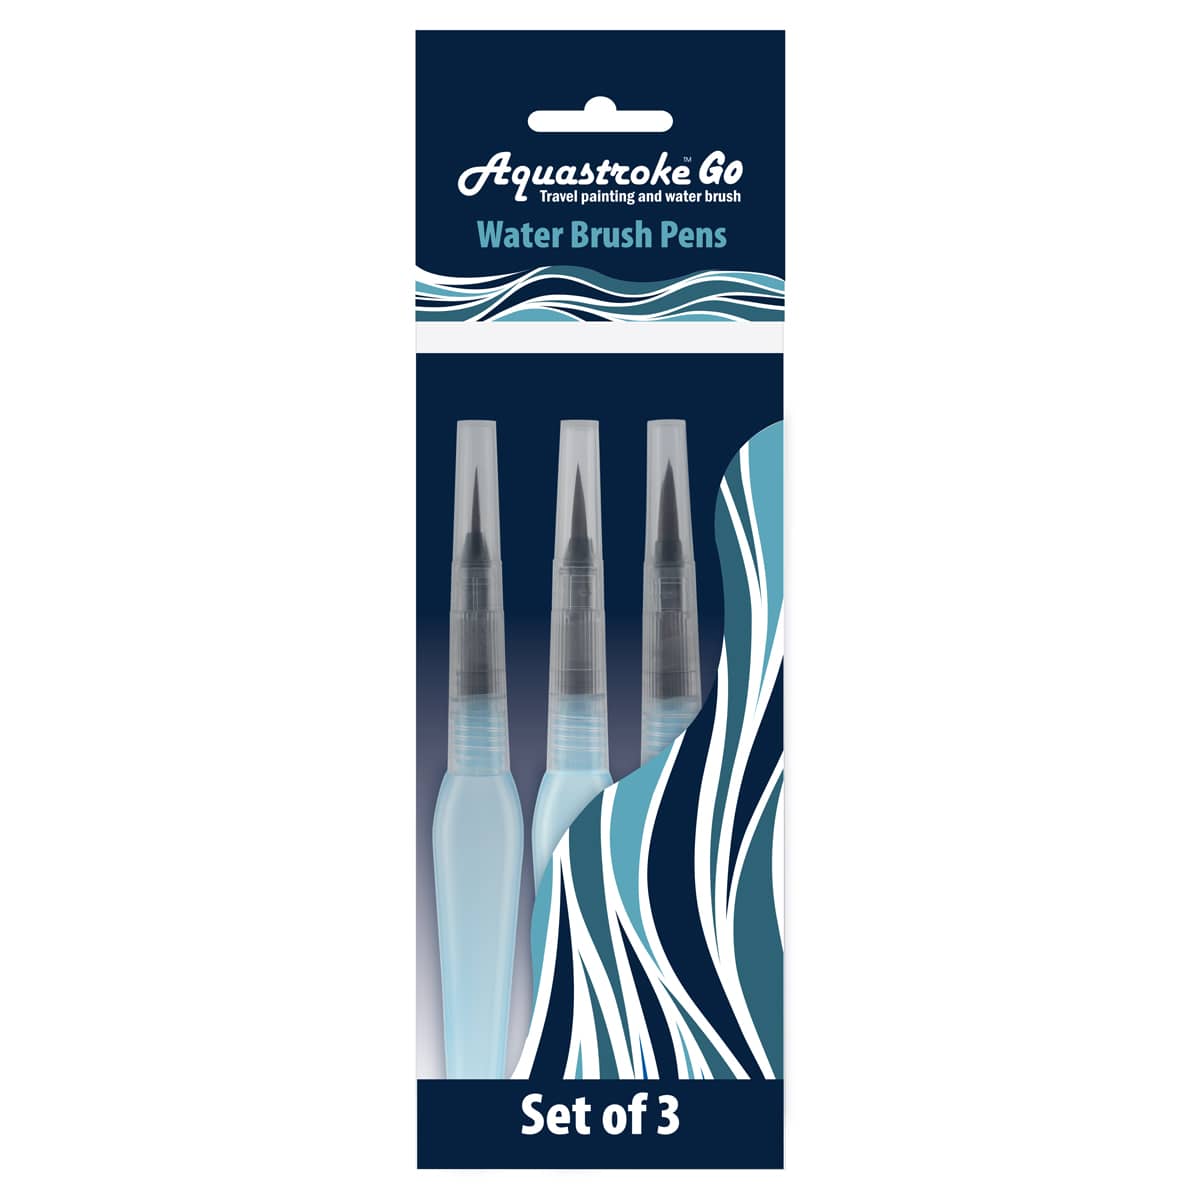 Aquastroke-Go Water Brush Pen Set of 3